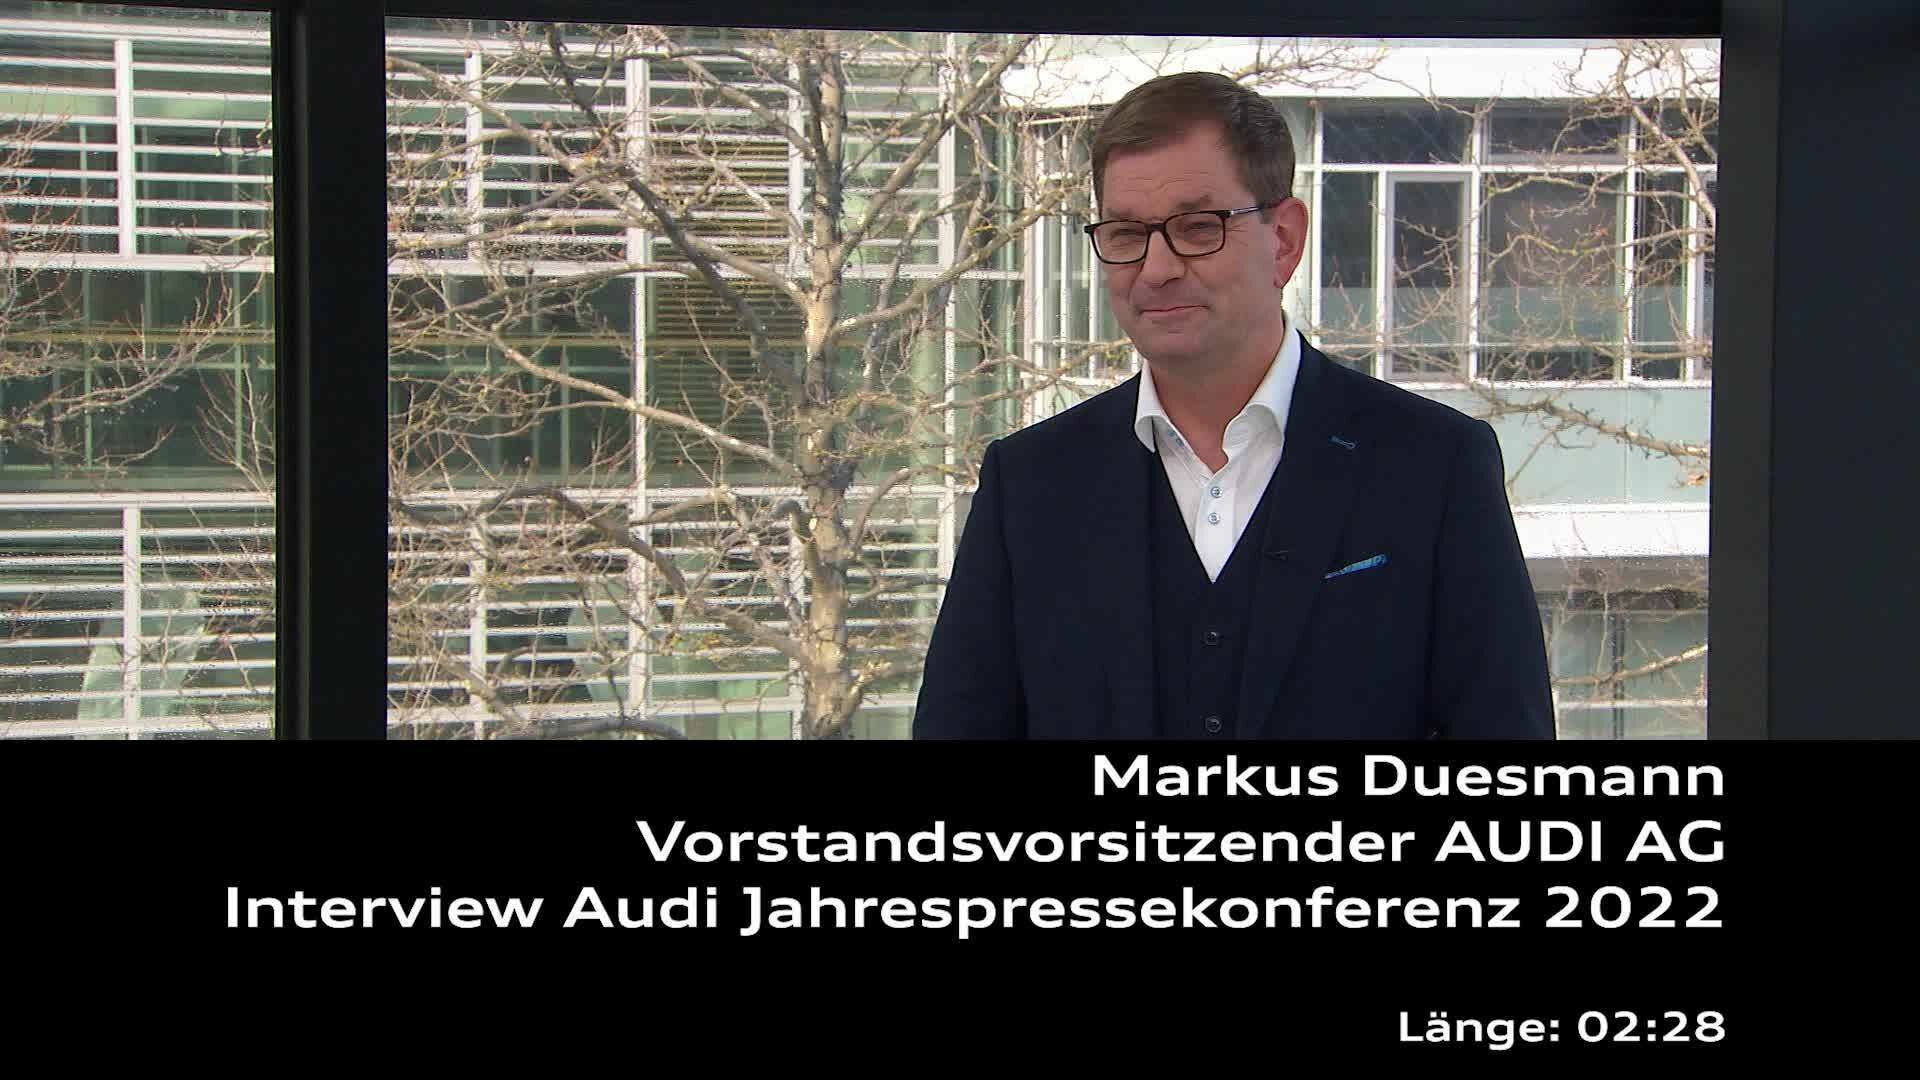 Interview mit Markus Duesmann im Rahmen der Audi Jahrespressekonferenz 2022